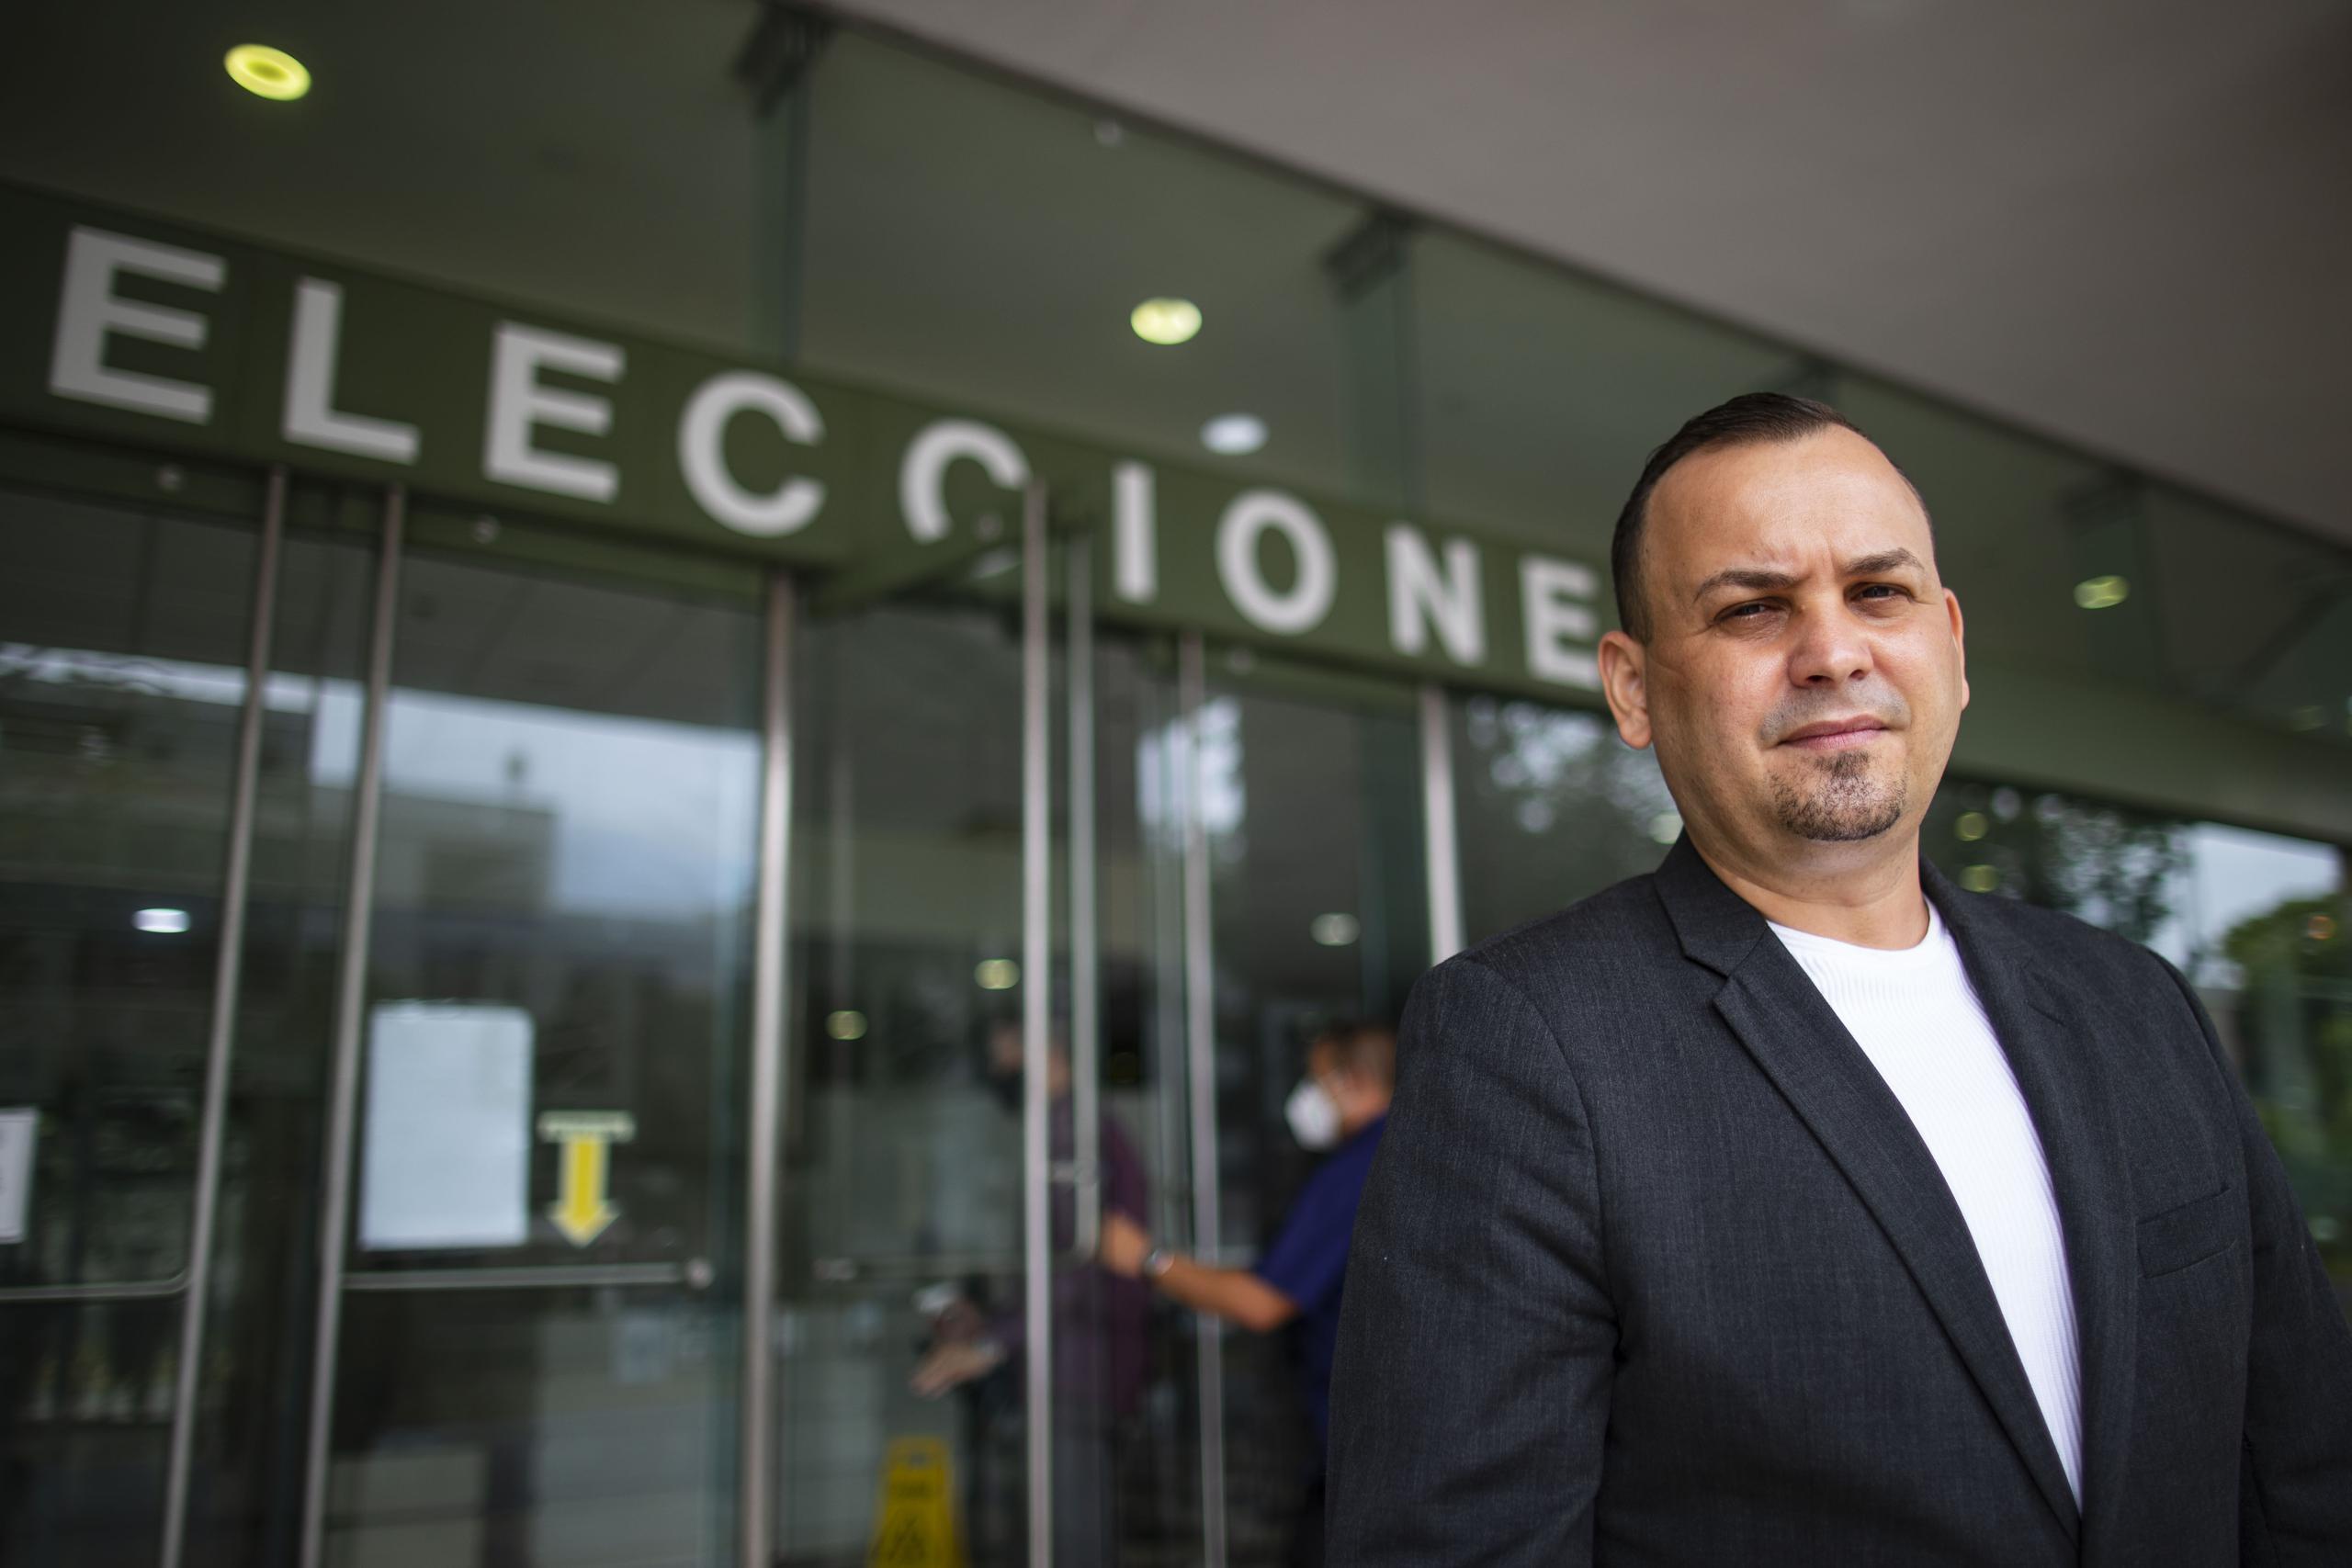 Héctor Joaquín Sánchez Álvarez fue subsecretario del Departamento de Transportación y Obras Públicas, subsecretario del Departamento de Educación y comisionado electoral del Partido Nuevo Progresista previo a irse al sector privado.